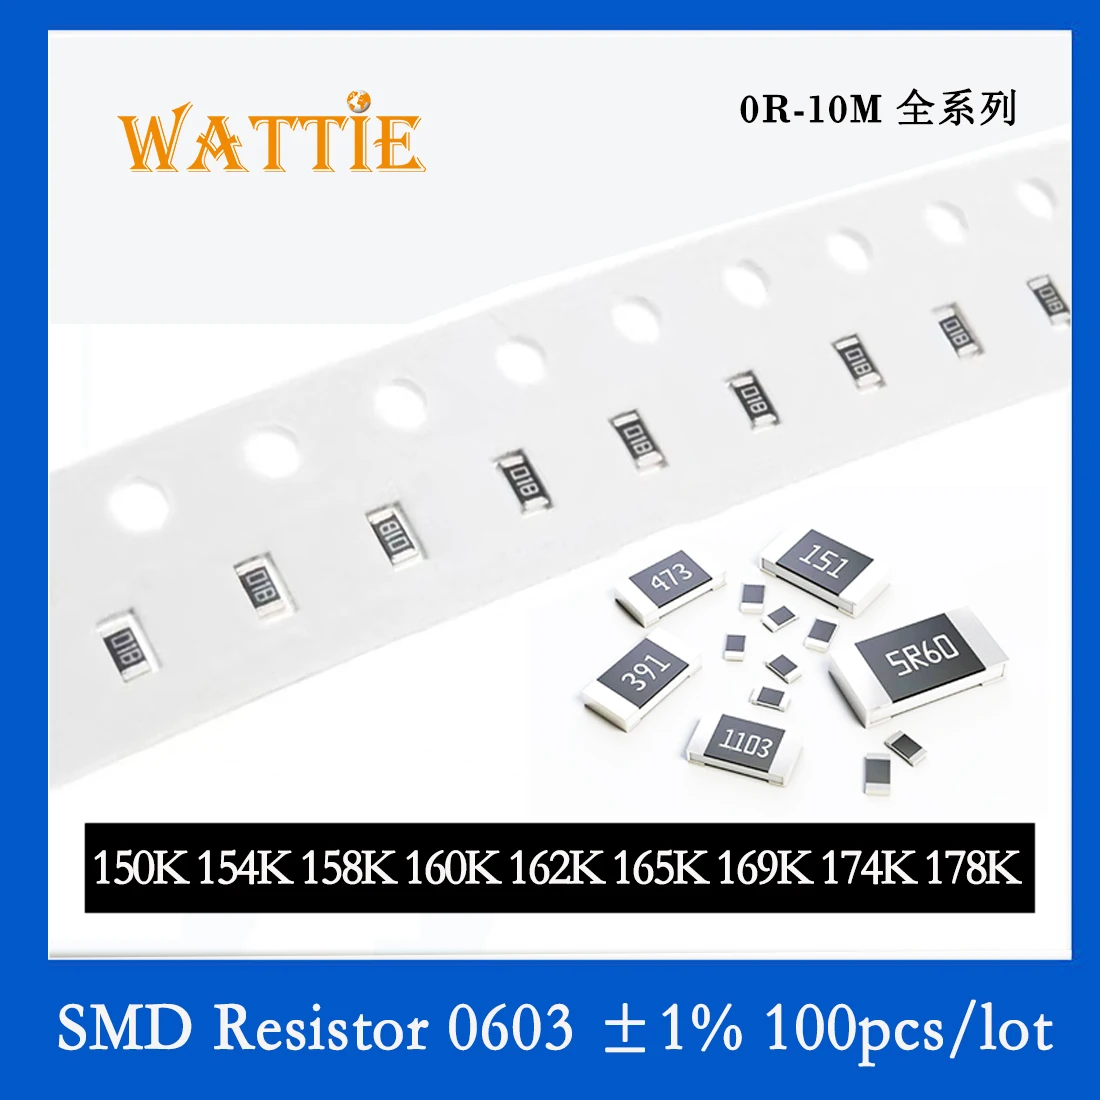 

SMD Resistor 0603 1% 150K 154K 158K 160K 162K 165K 169K 174K 178K 100PCS/lot chip resistors 1/10W 1.6mm*0.8mm